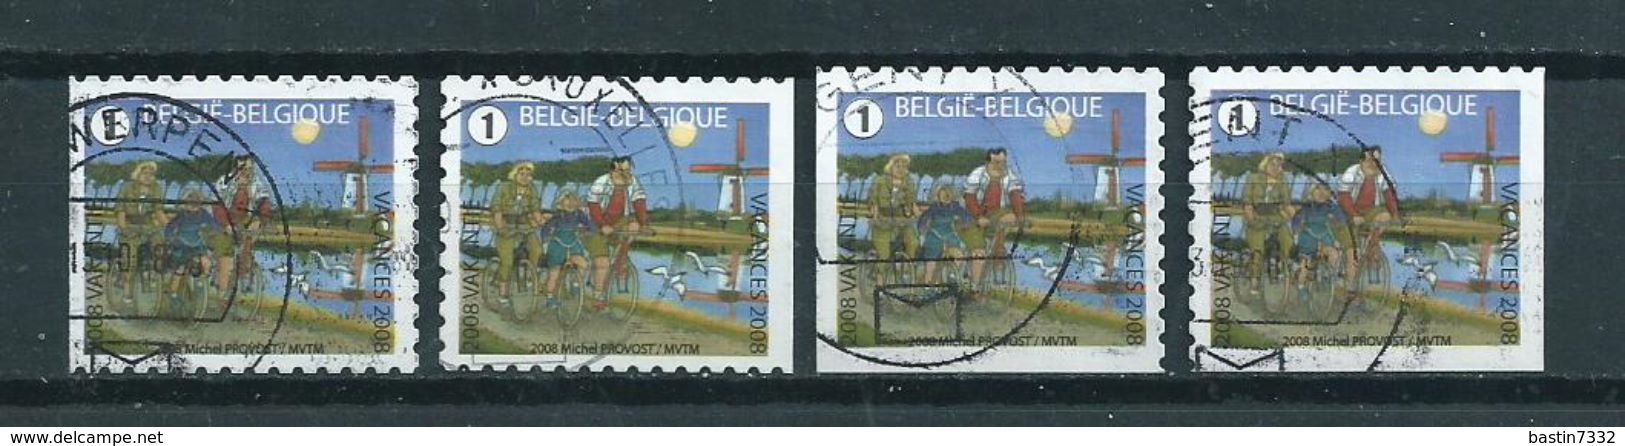 2008 Belgium Complete Set Vacation Booklet Stamps Used/gebruikt/oblitere - Gebraucht